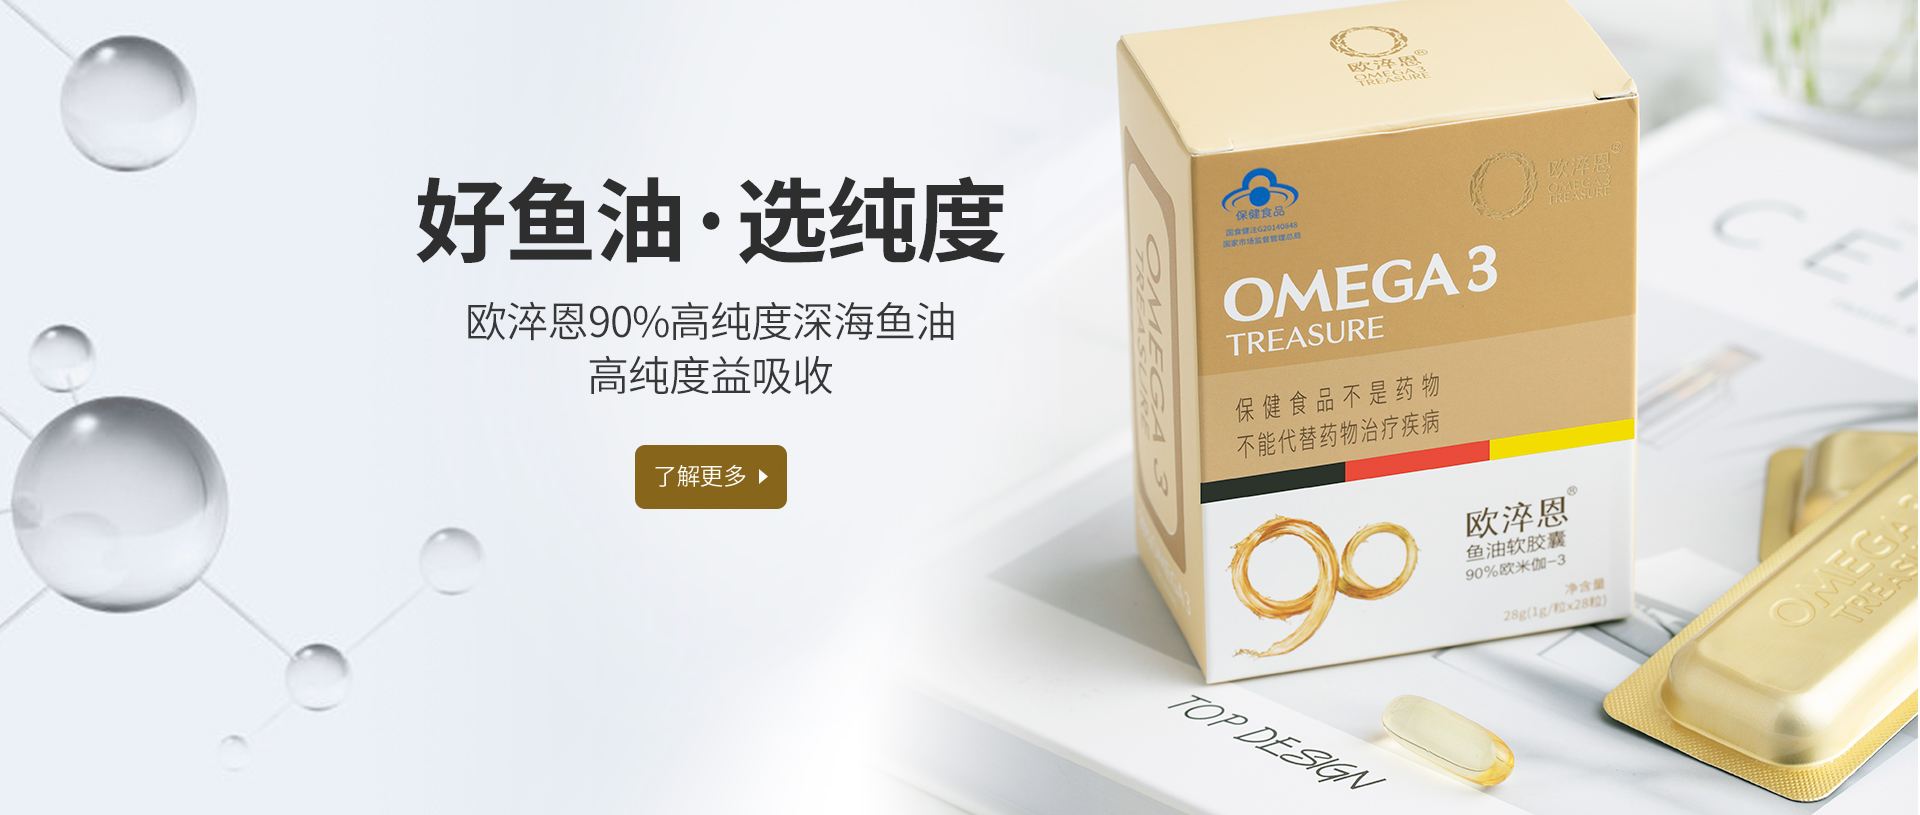 Omega-3一万个放心工程